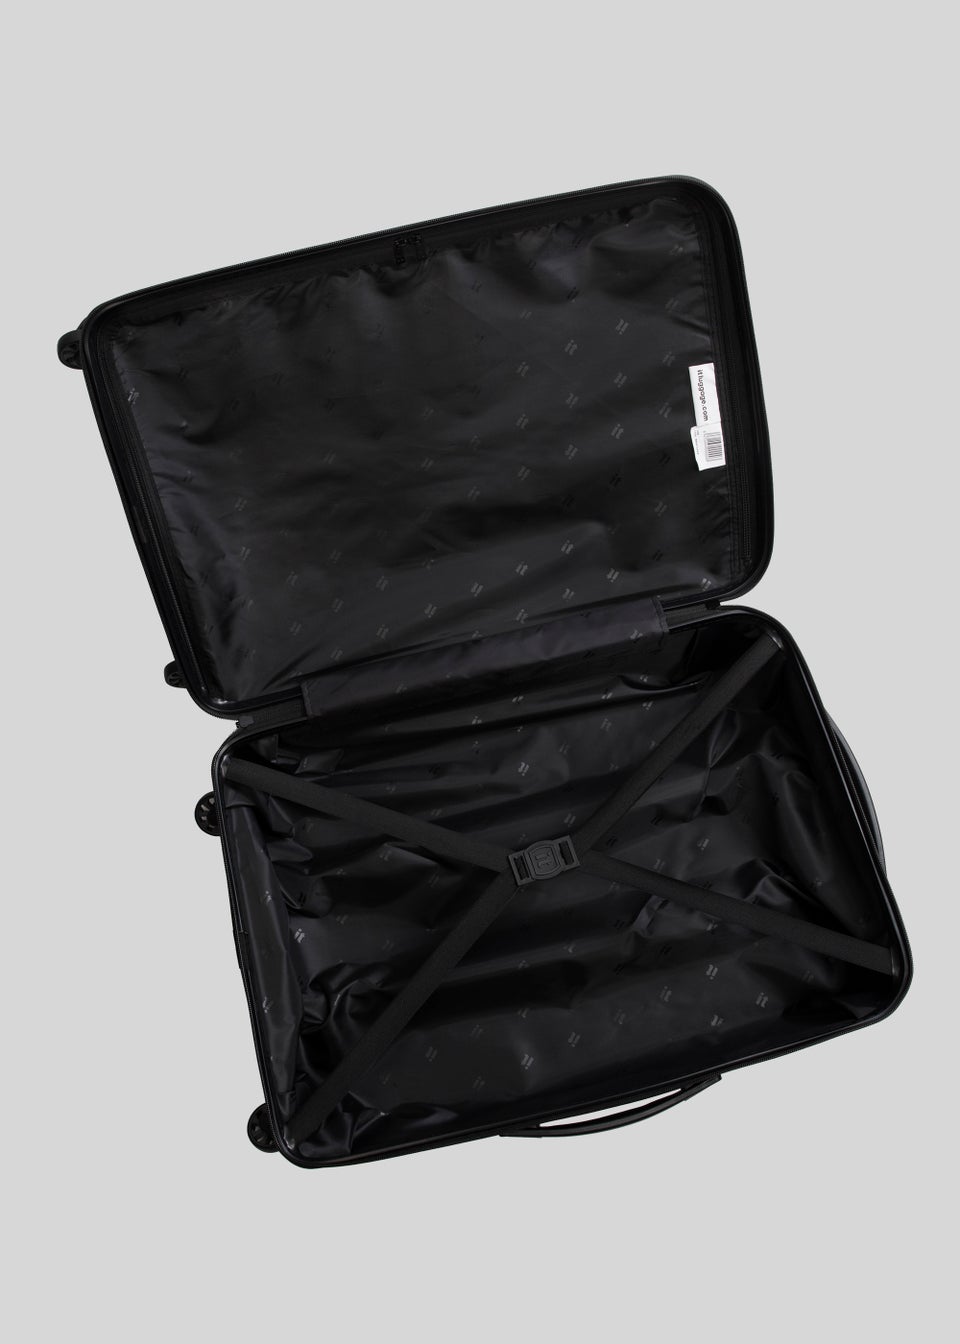 IT Luggage Grey Hard Shell Suitcase